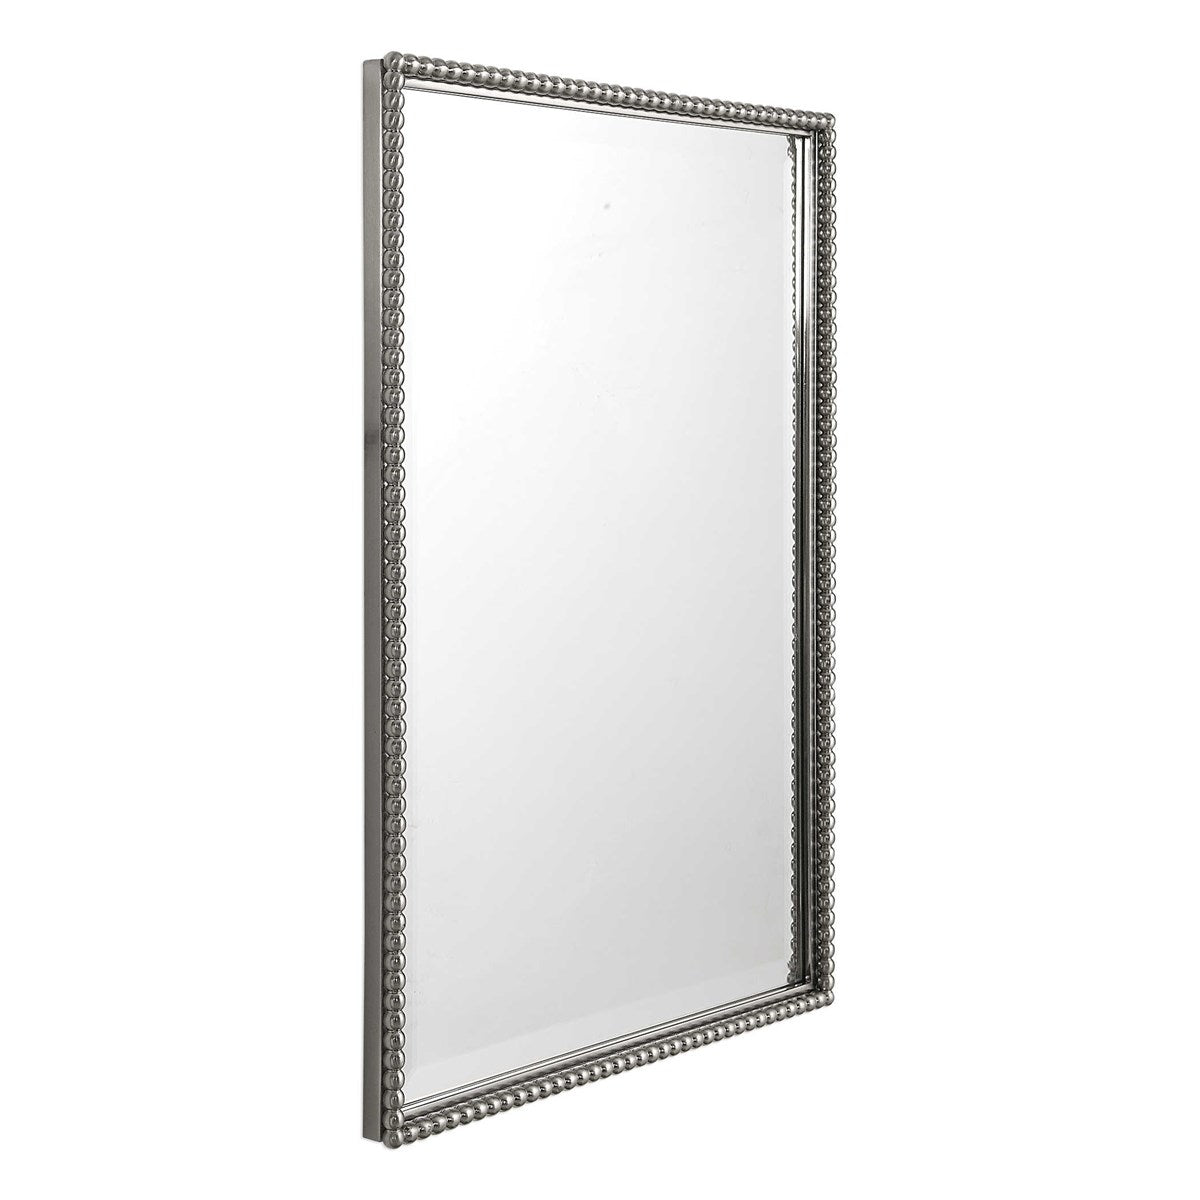 Nickel beaded vanity mirror